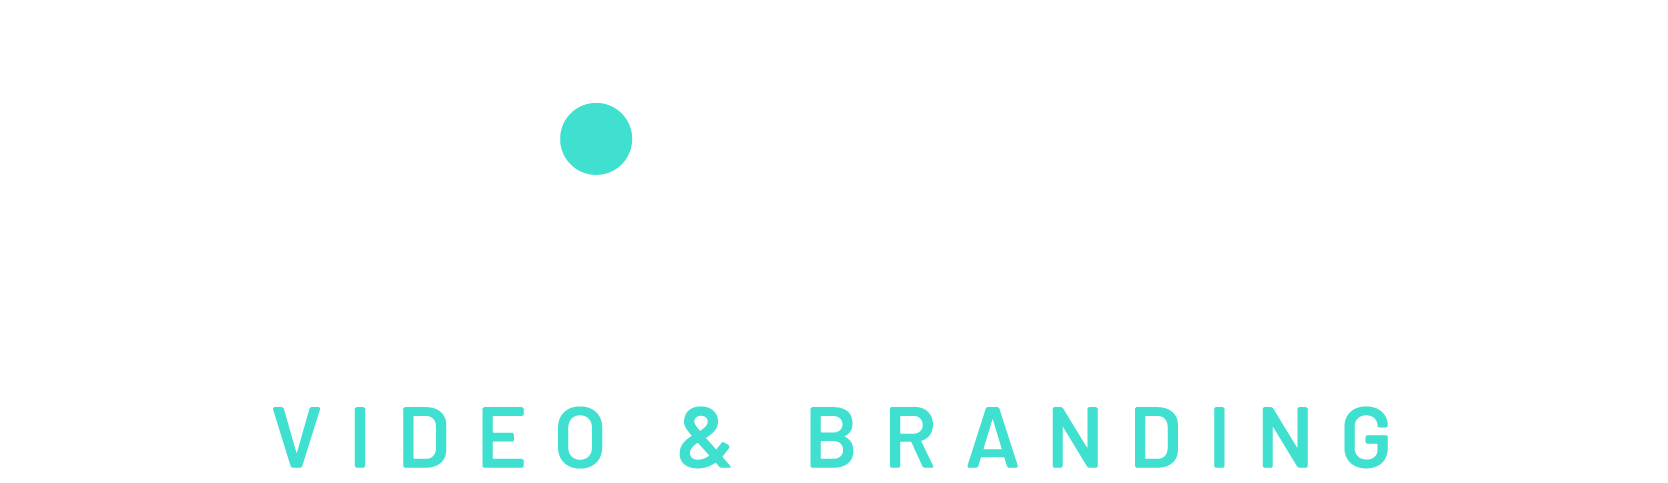 Ca-chet Brugge logo & branding